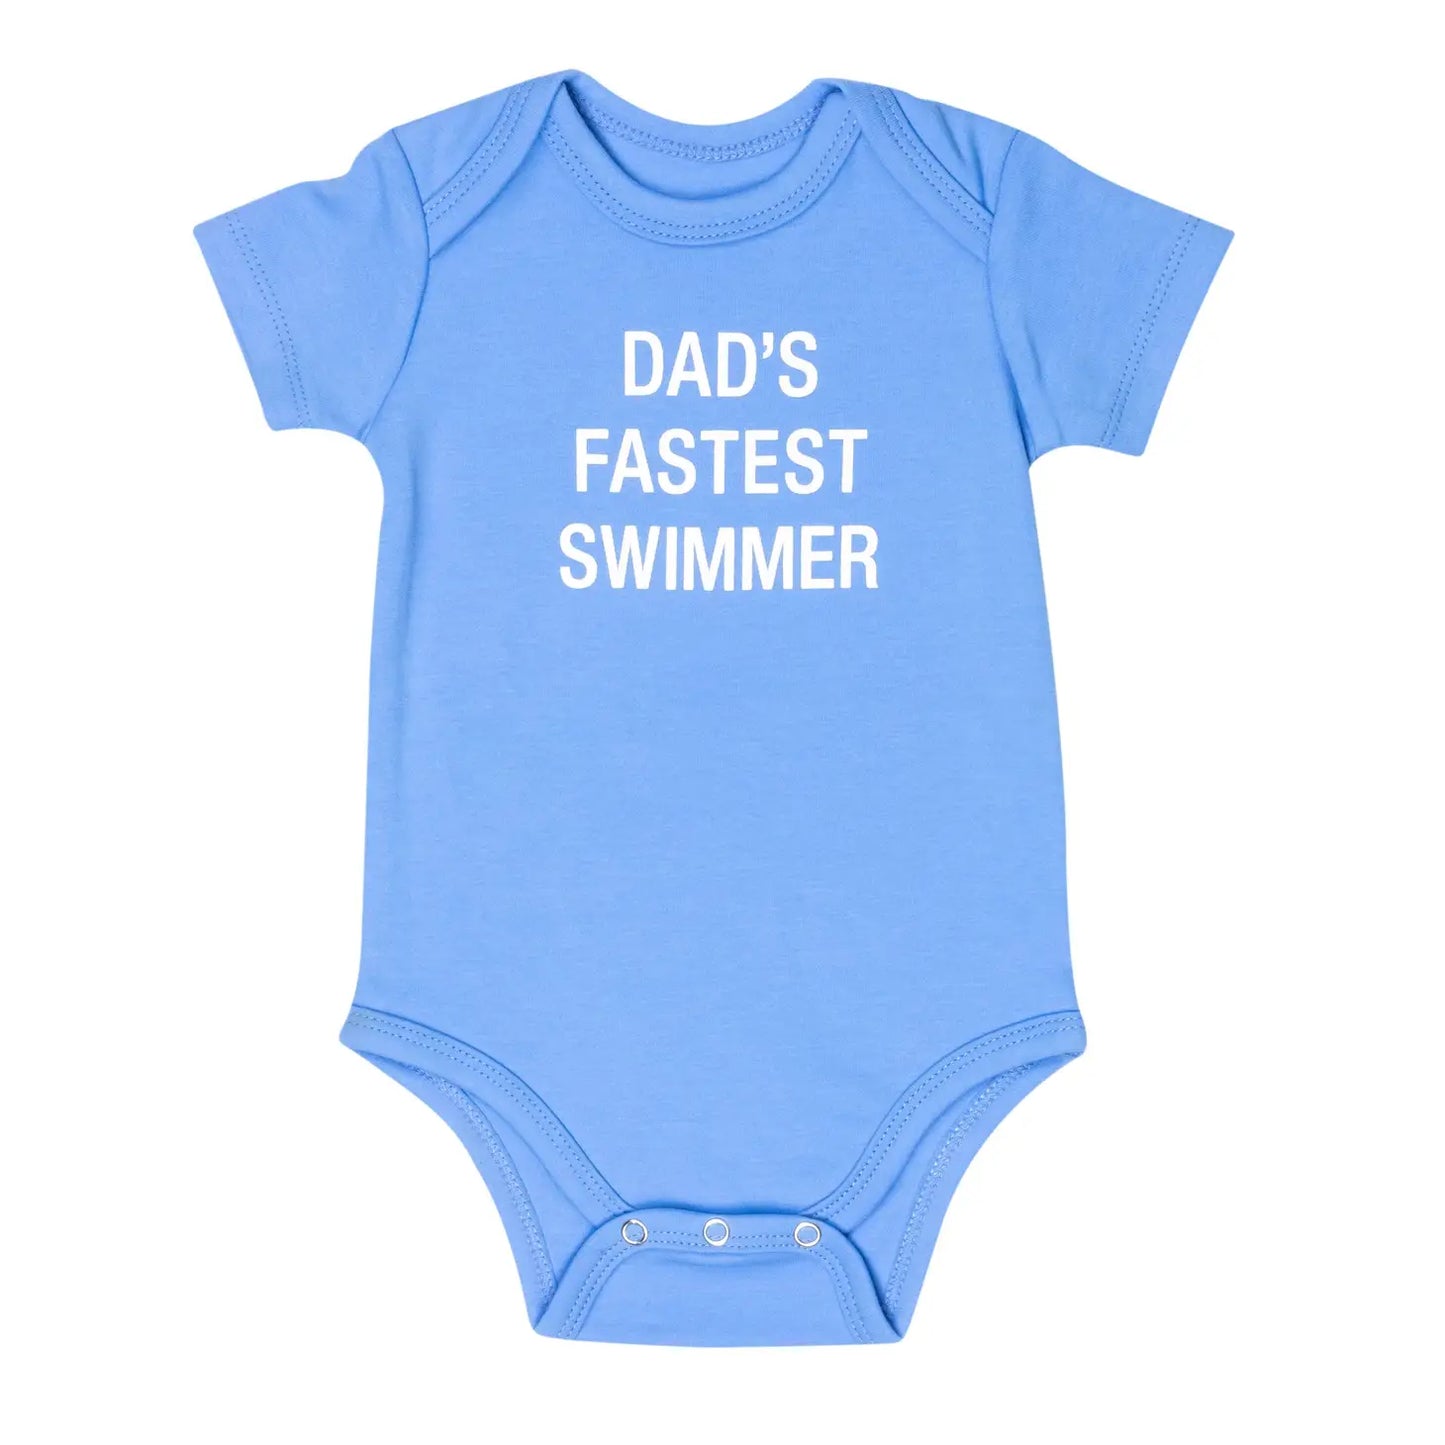 Dad's Fastest Swimmer Onesie Bodysuit